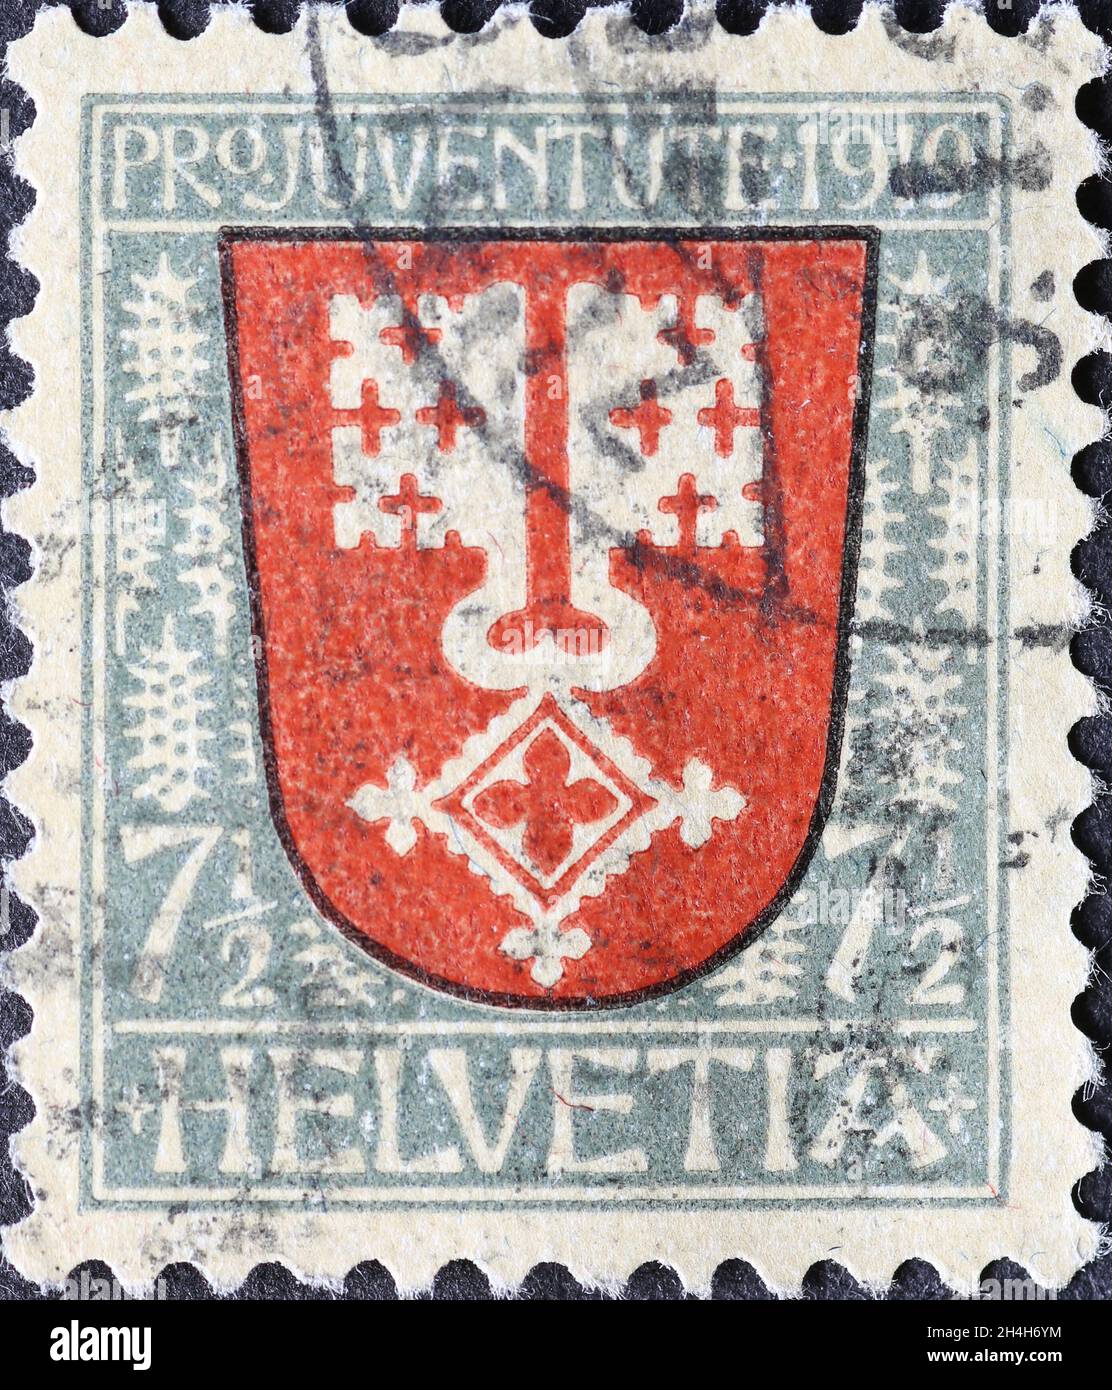 Suisse - Circa 1919: Timbre-poste imprimé en Suisse avec une double clé sur les armoiries du canton suisse de Nidwalden sur un ch Banque D'Images